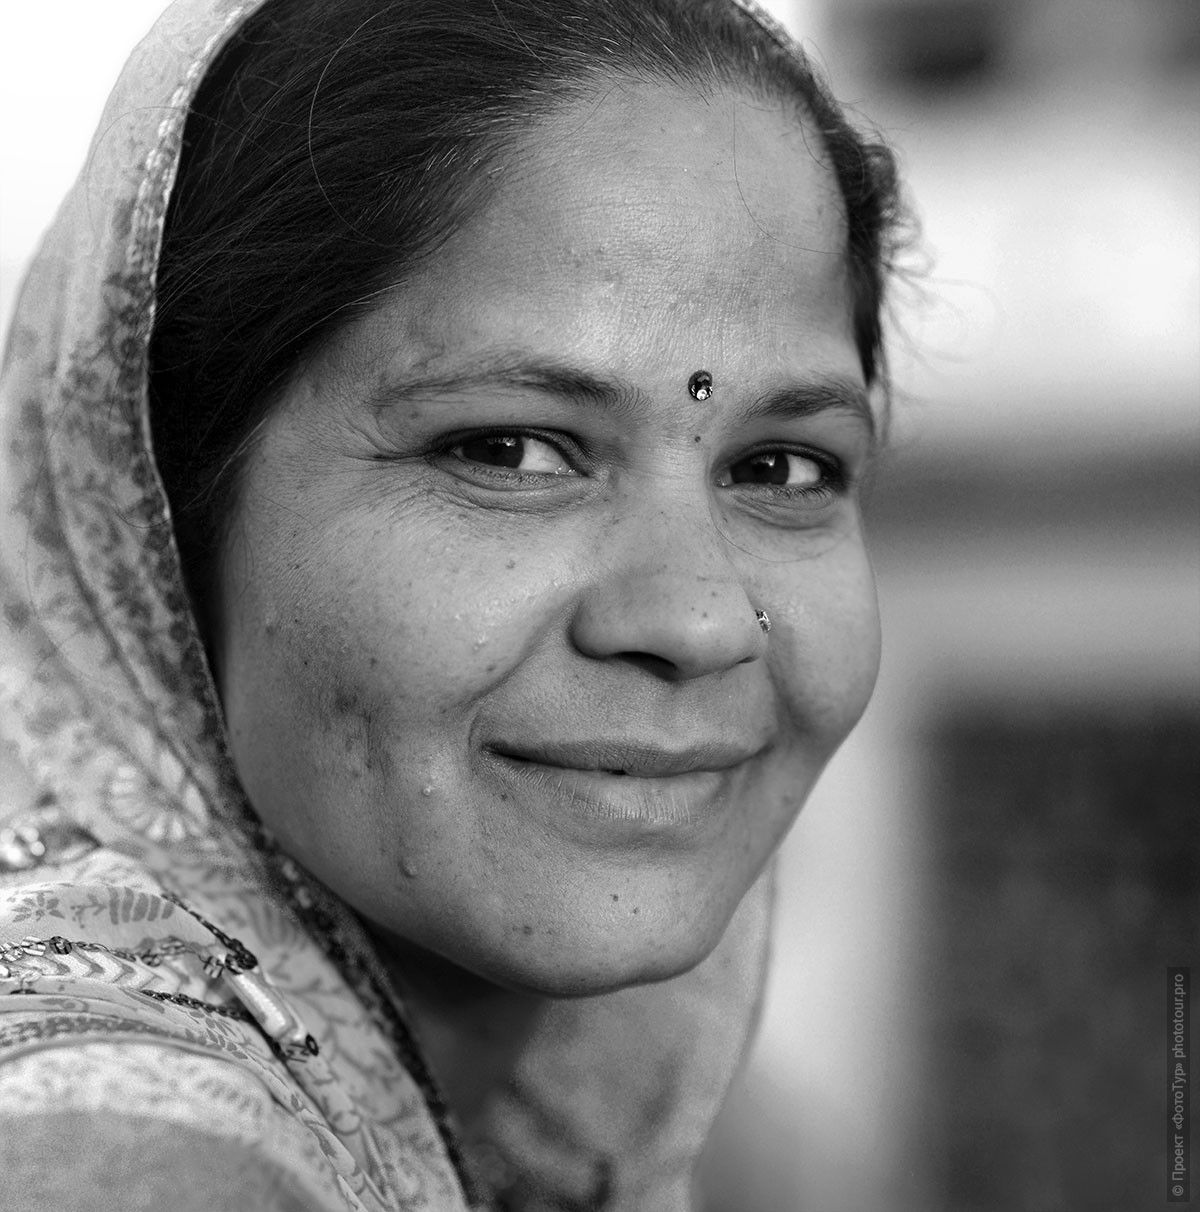 Фото Жительница Матхуры, Индия. Фототур по Золотому Треугольнику Индии.